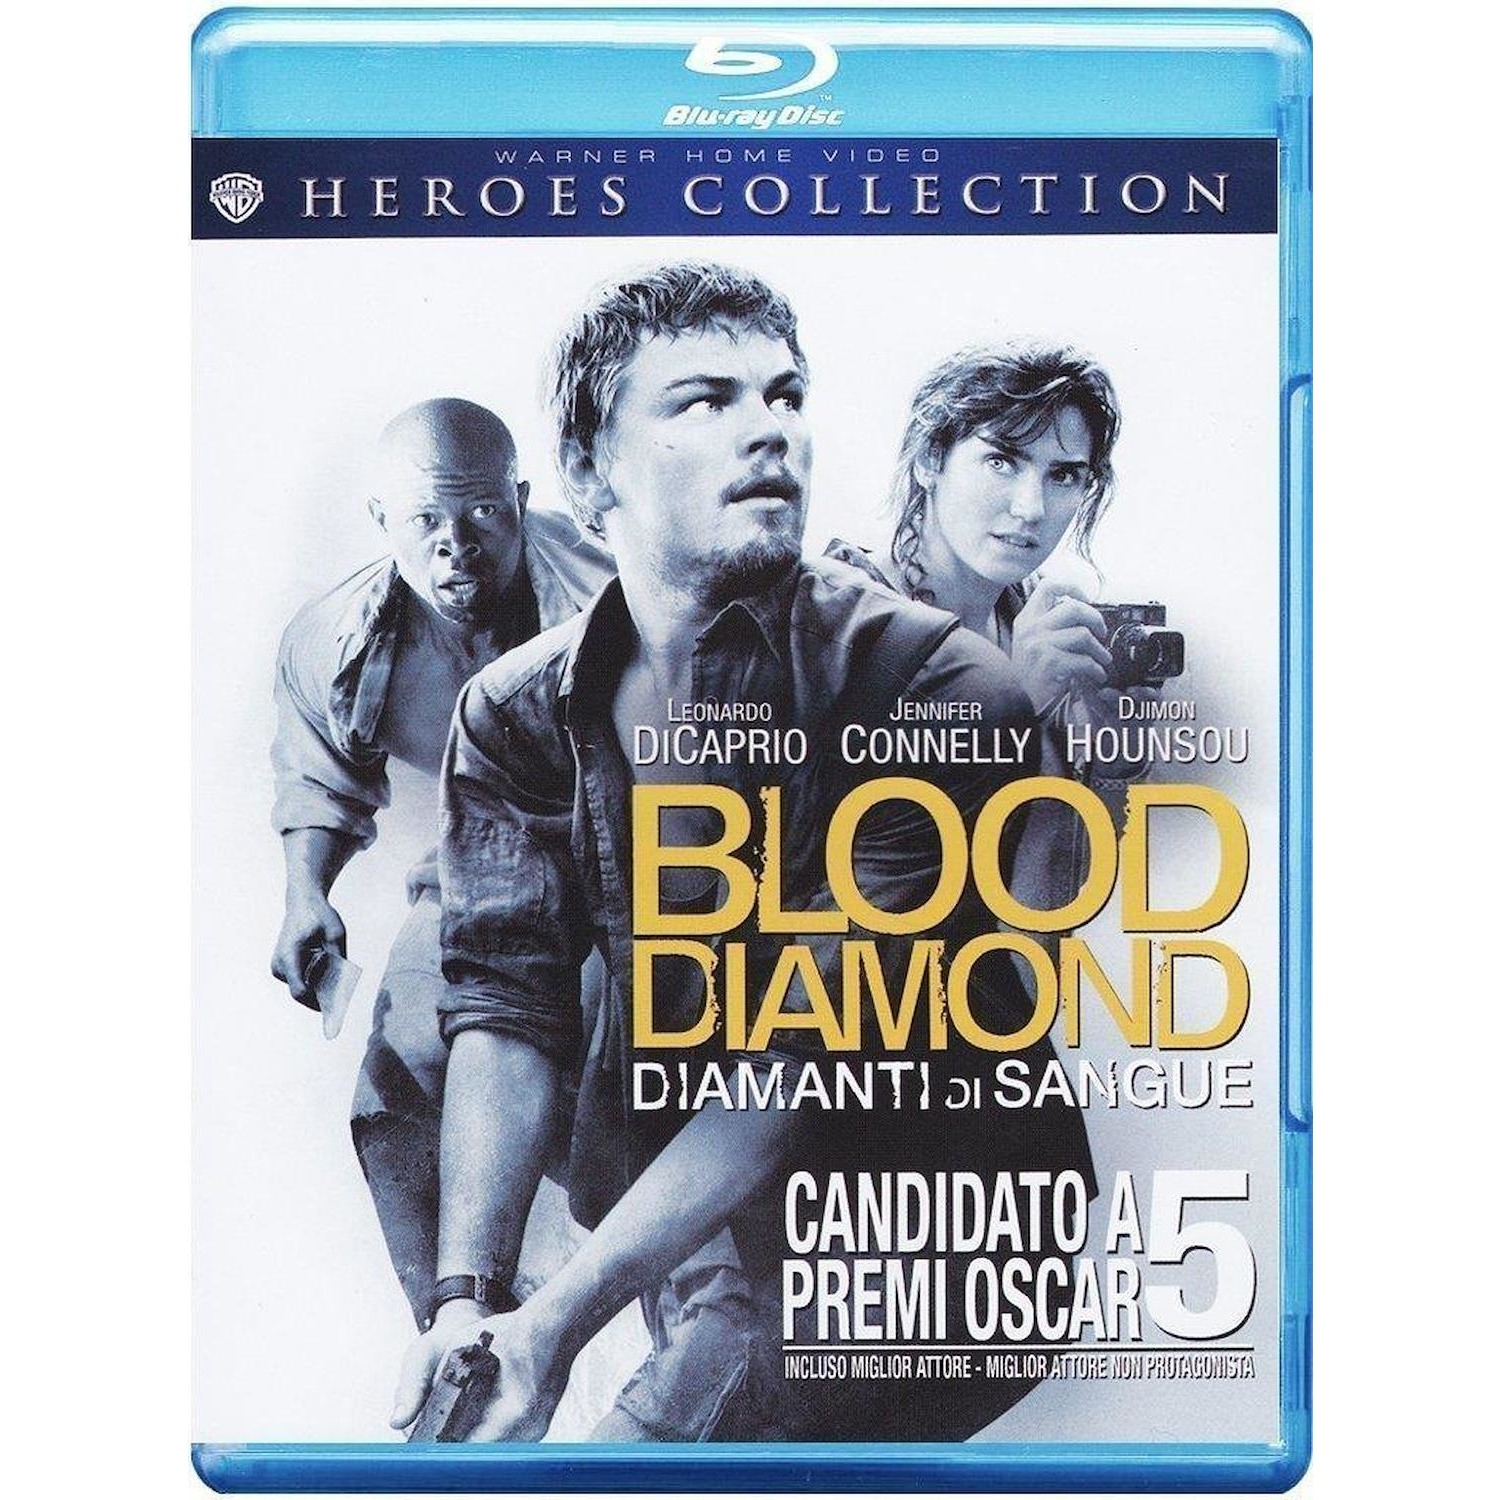 Immagine per Blu-ray Blood diamond da DIMOStore